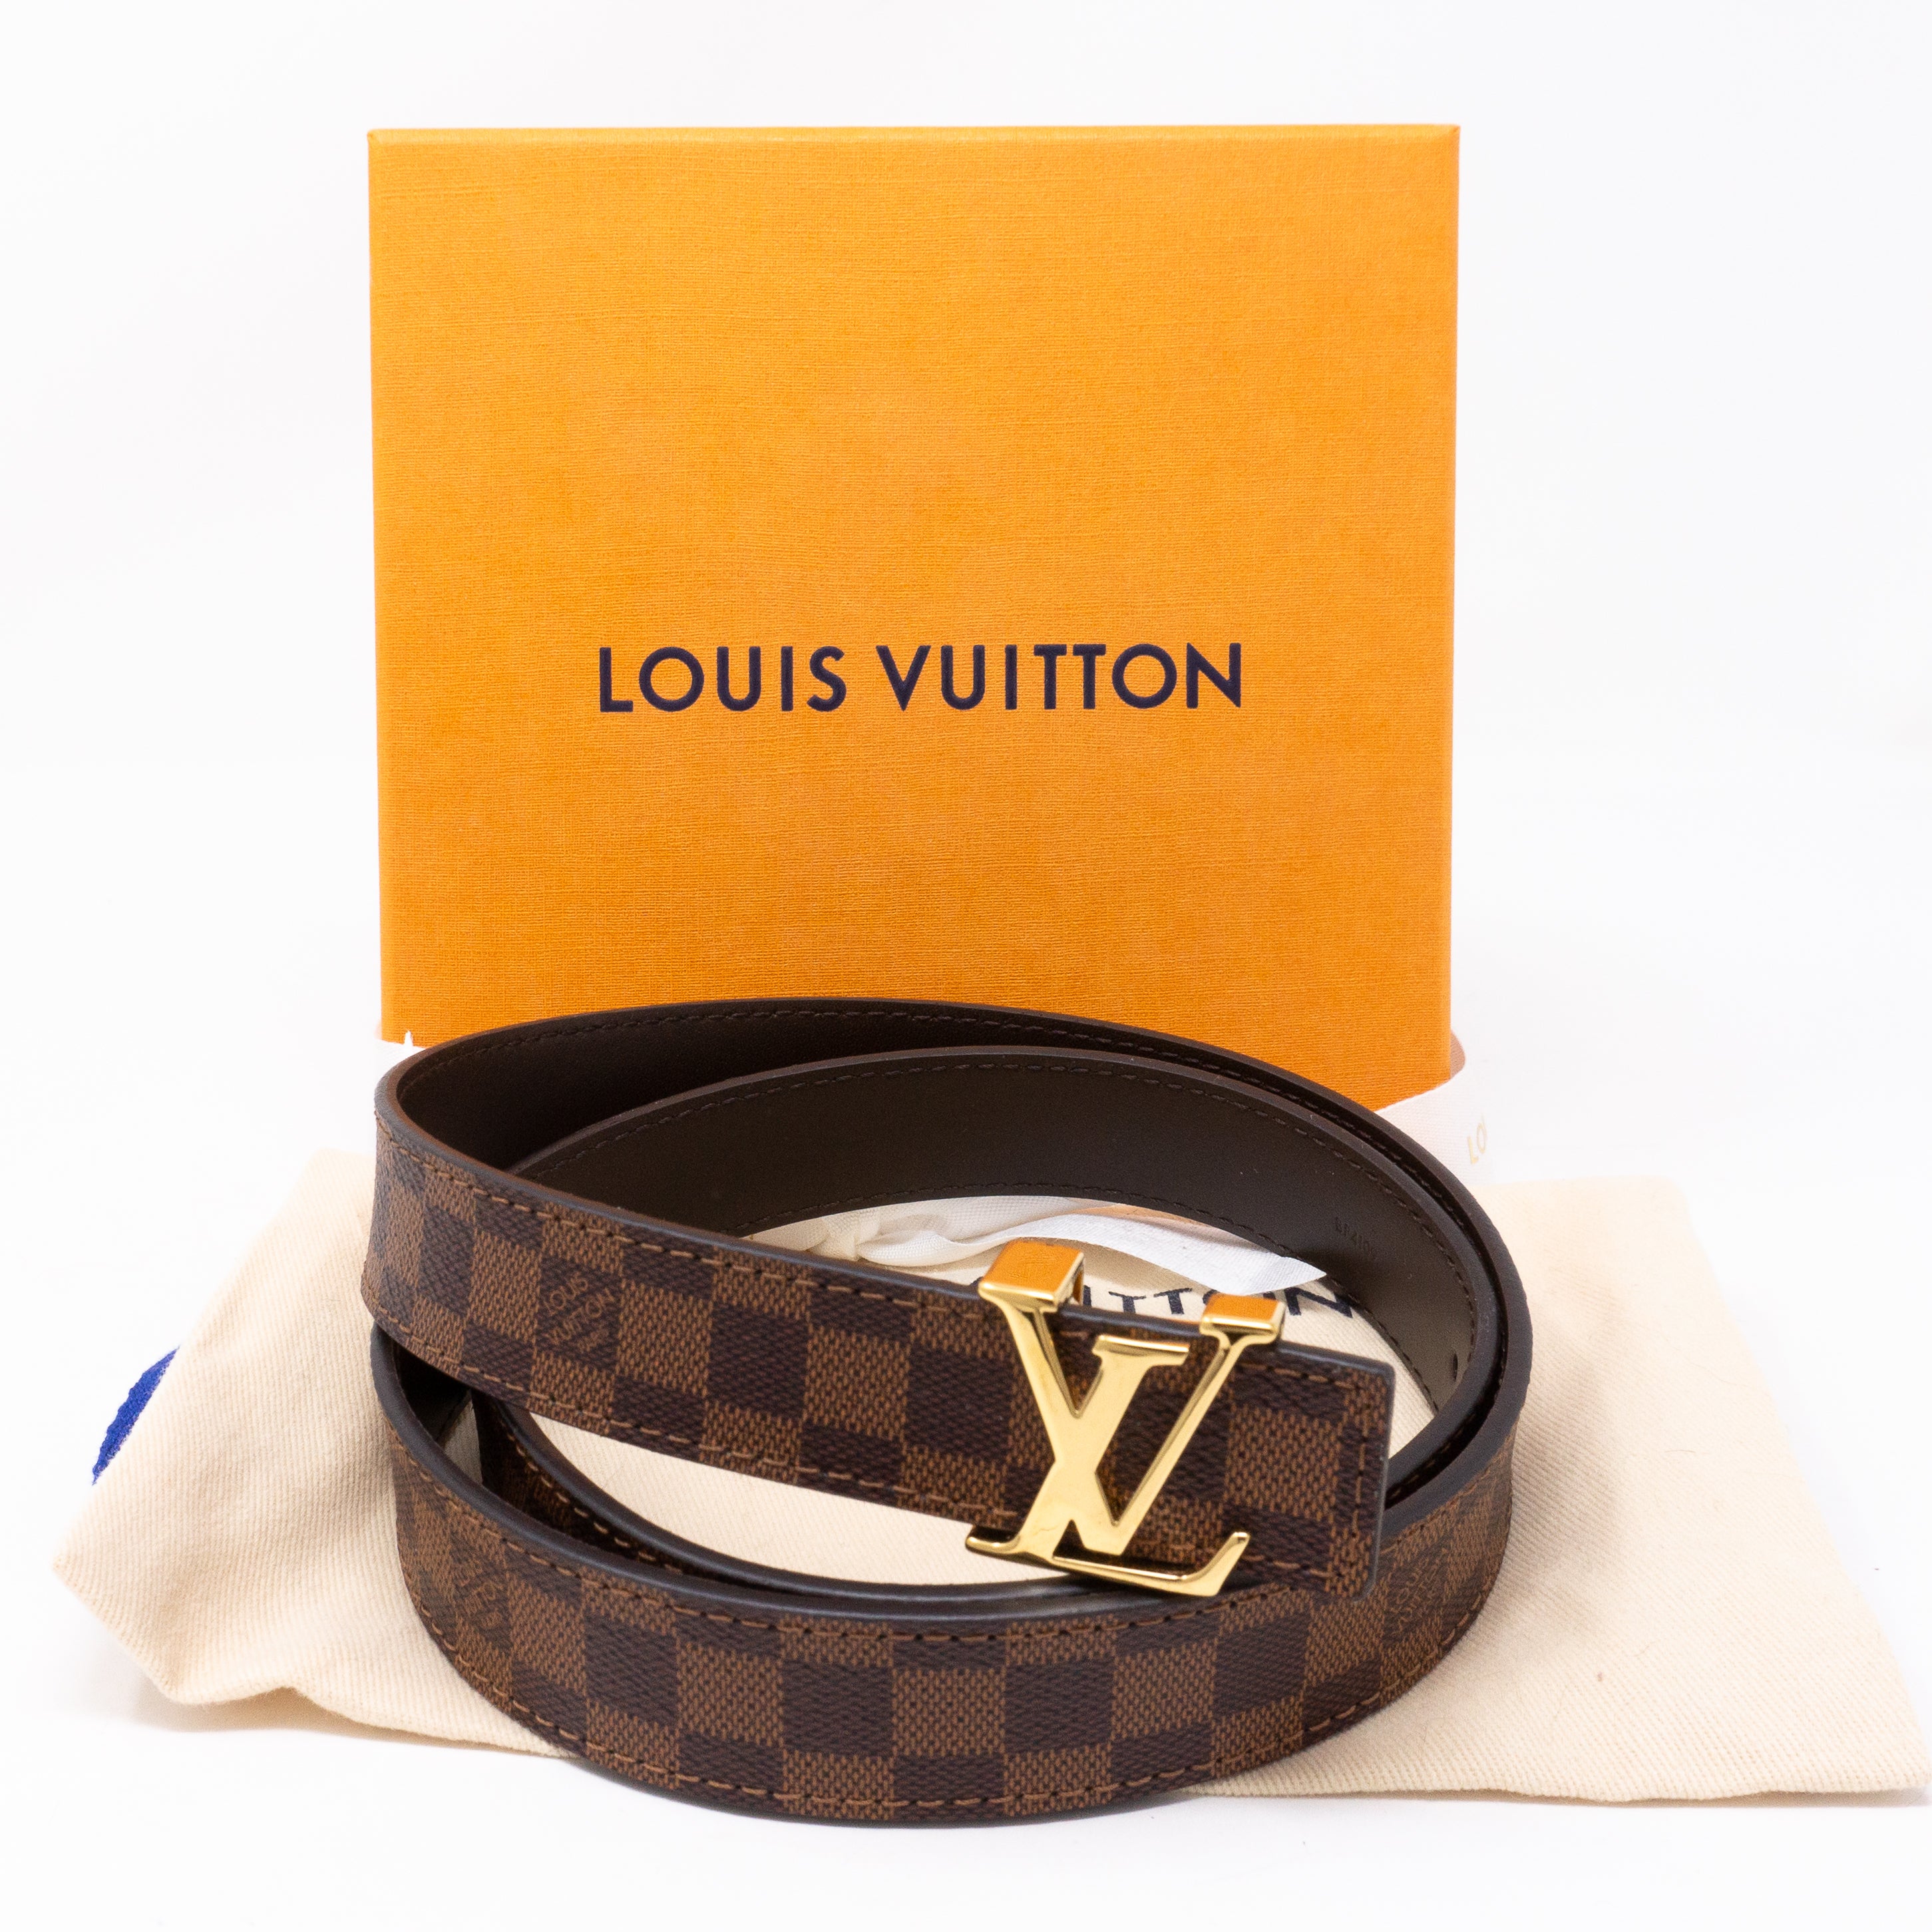 Louis Vuitton – Belt Mini Damier Azur 25 mm 85 cm – Queen Station